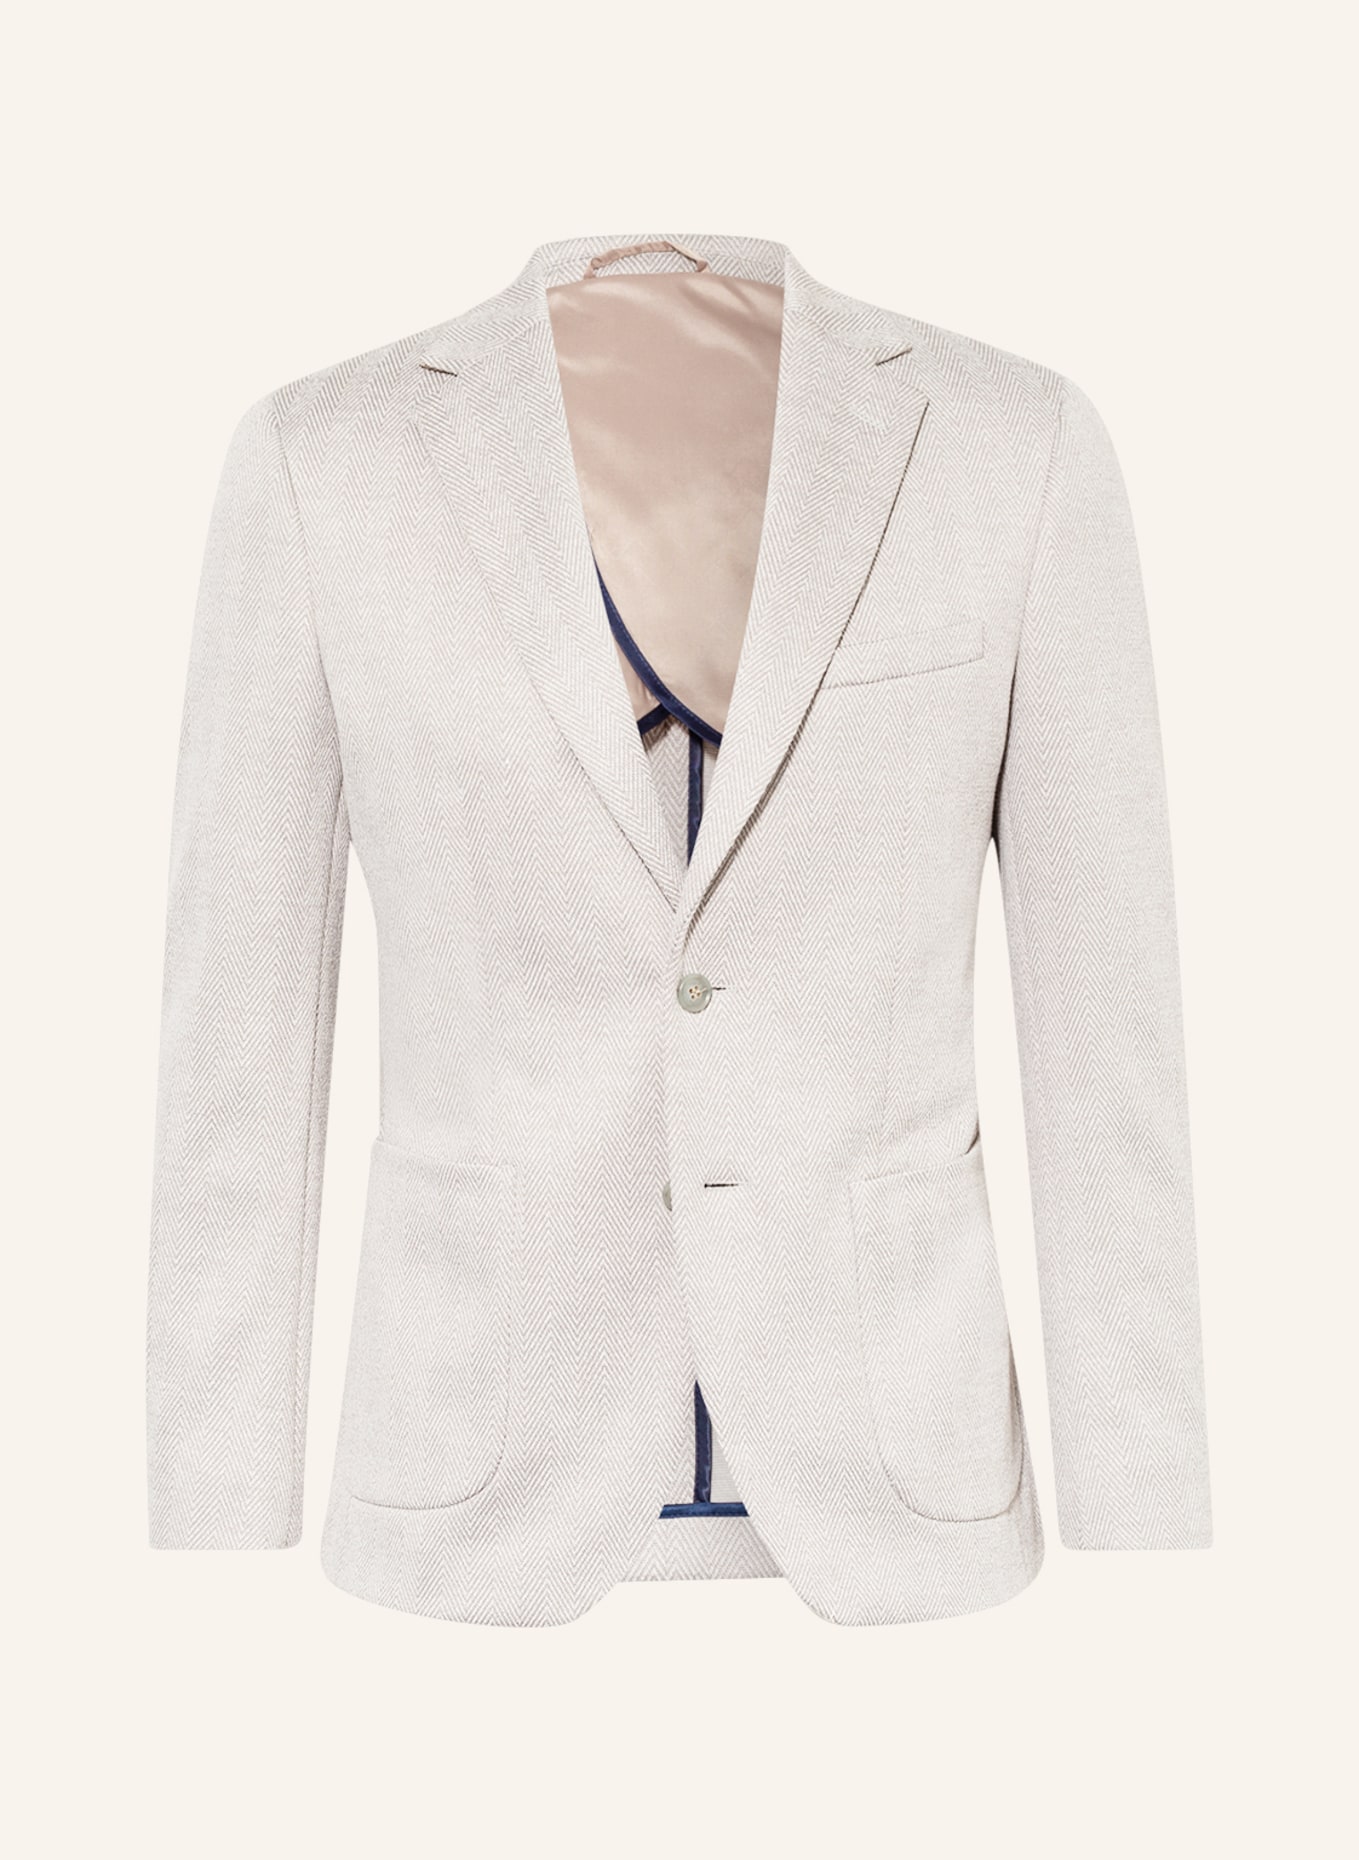 PAUL Suit jacket slim fit, Color: 116 GREY (Image 1)